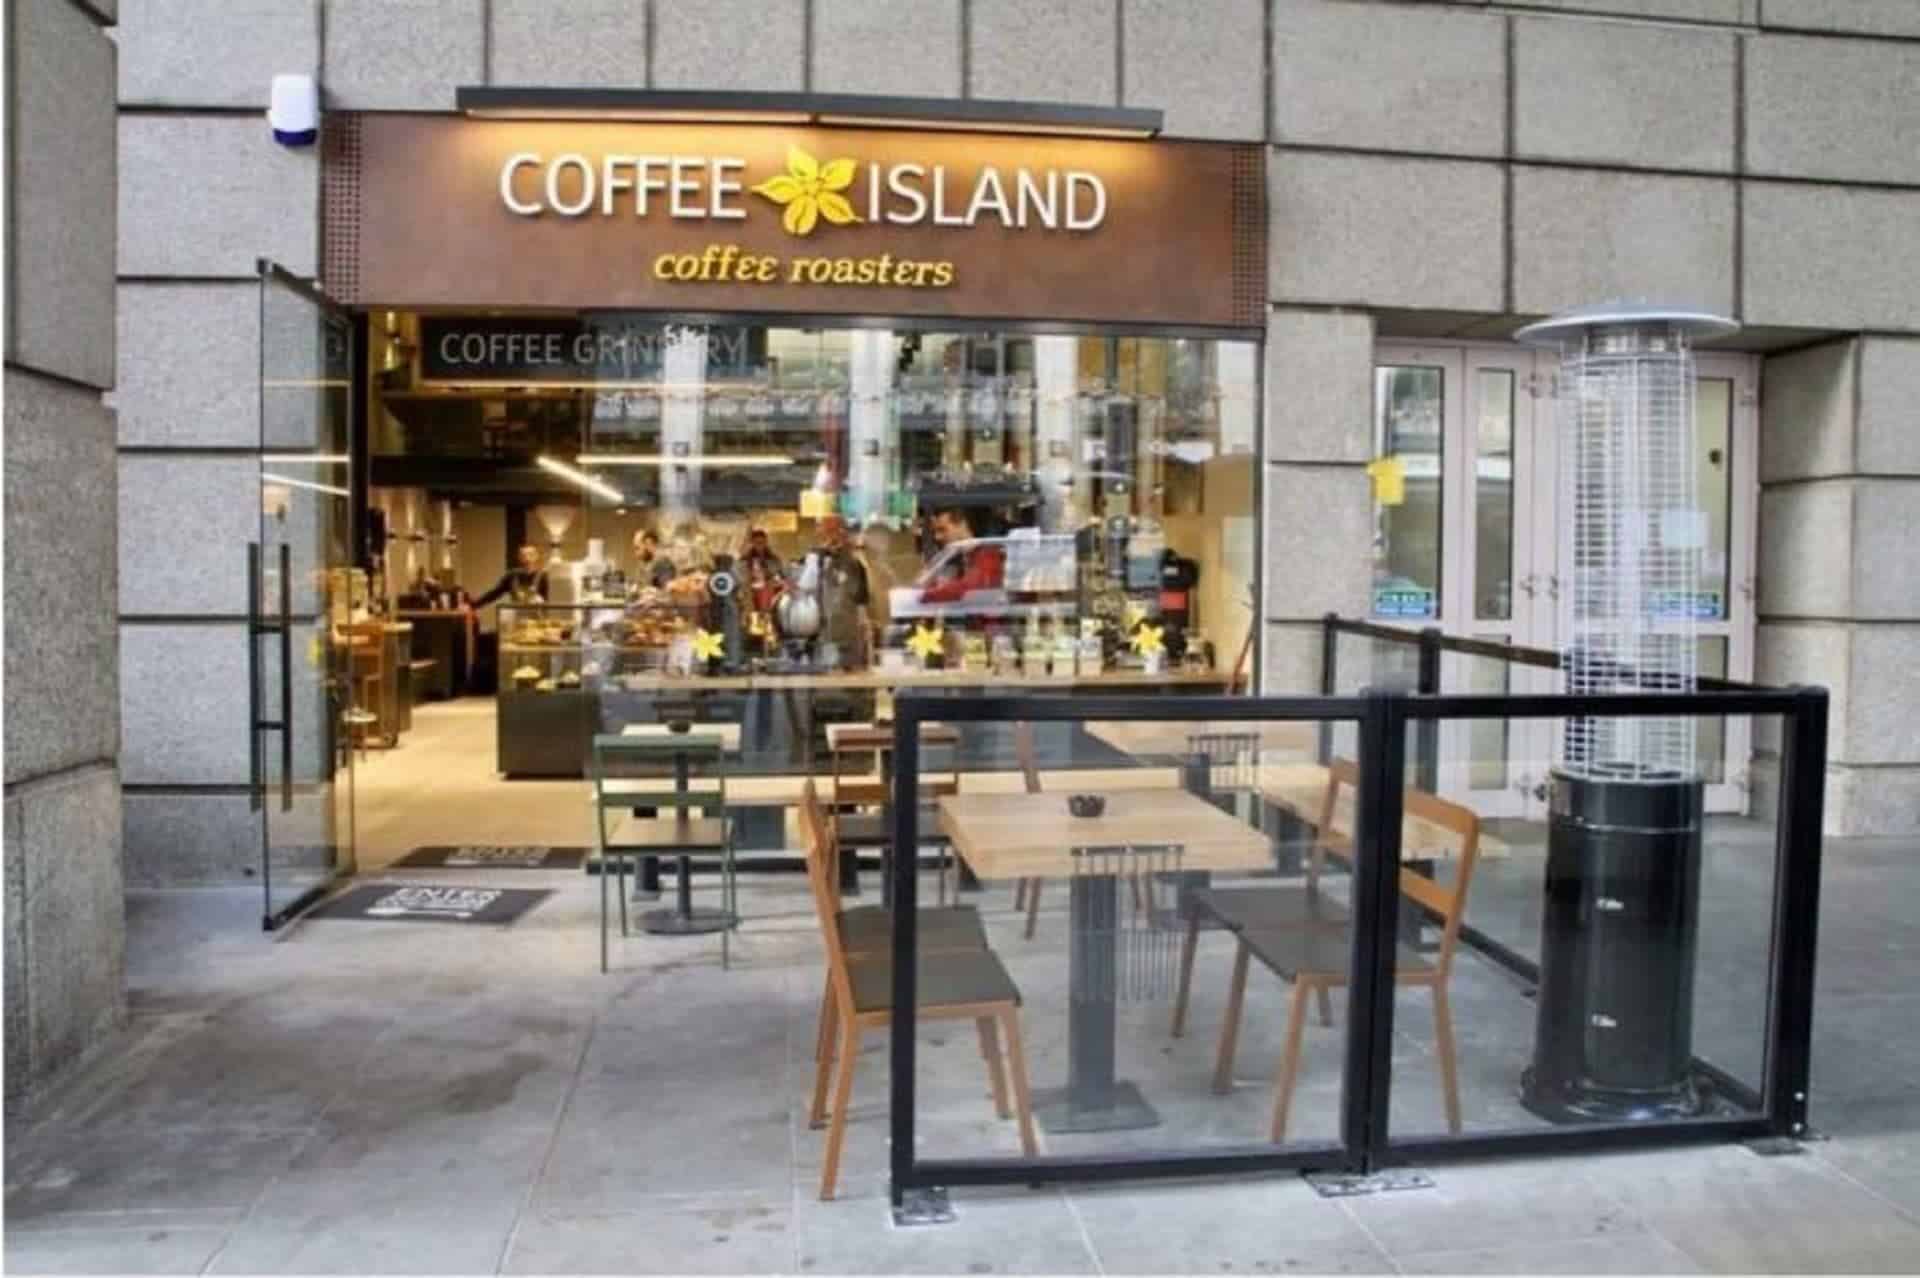 Coffee Island in UK